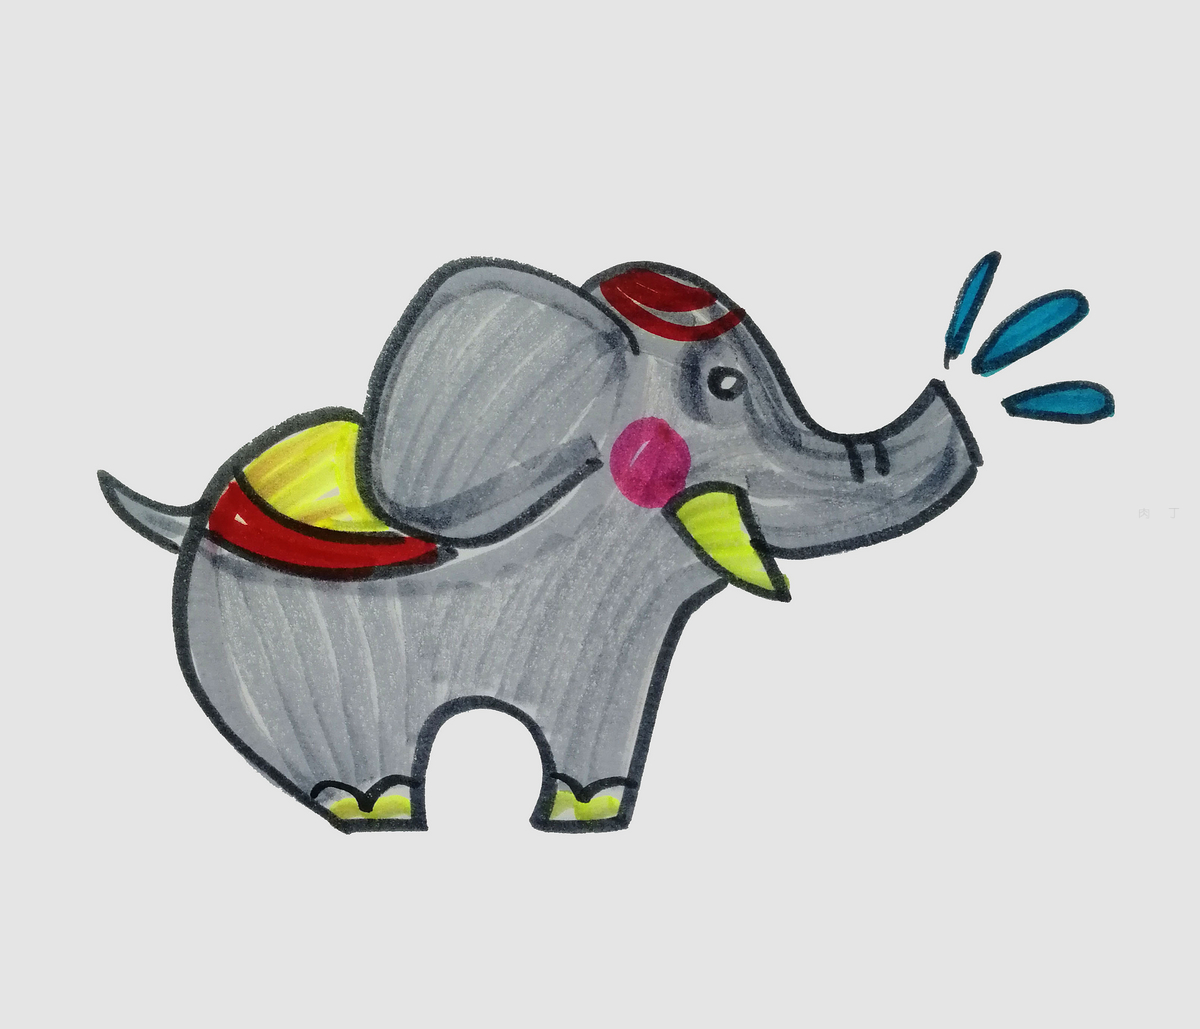 开心的大象简笔画 儿童动物简笔画学习图片 肉丁儿童网